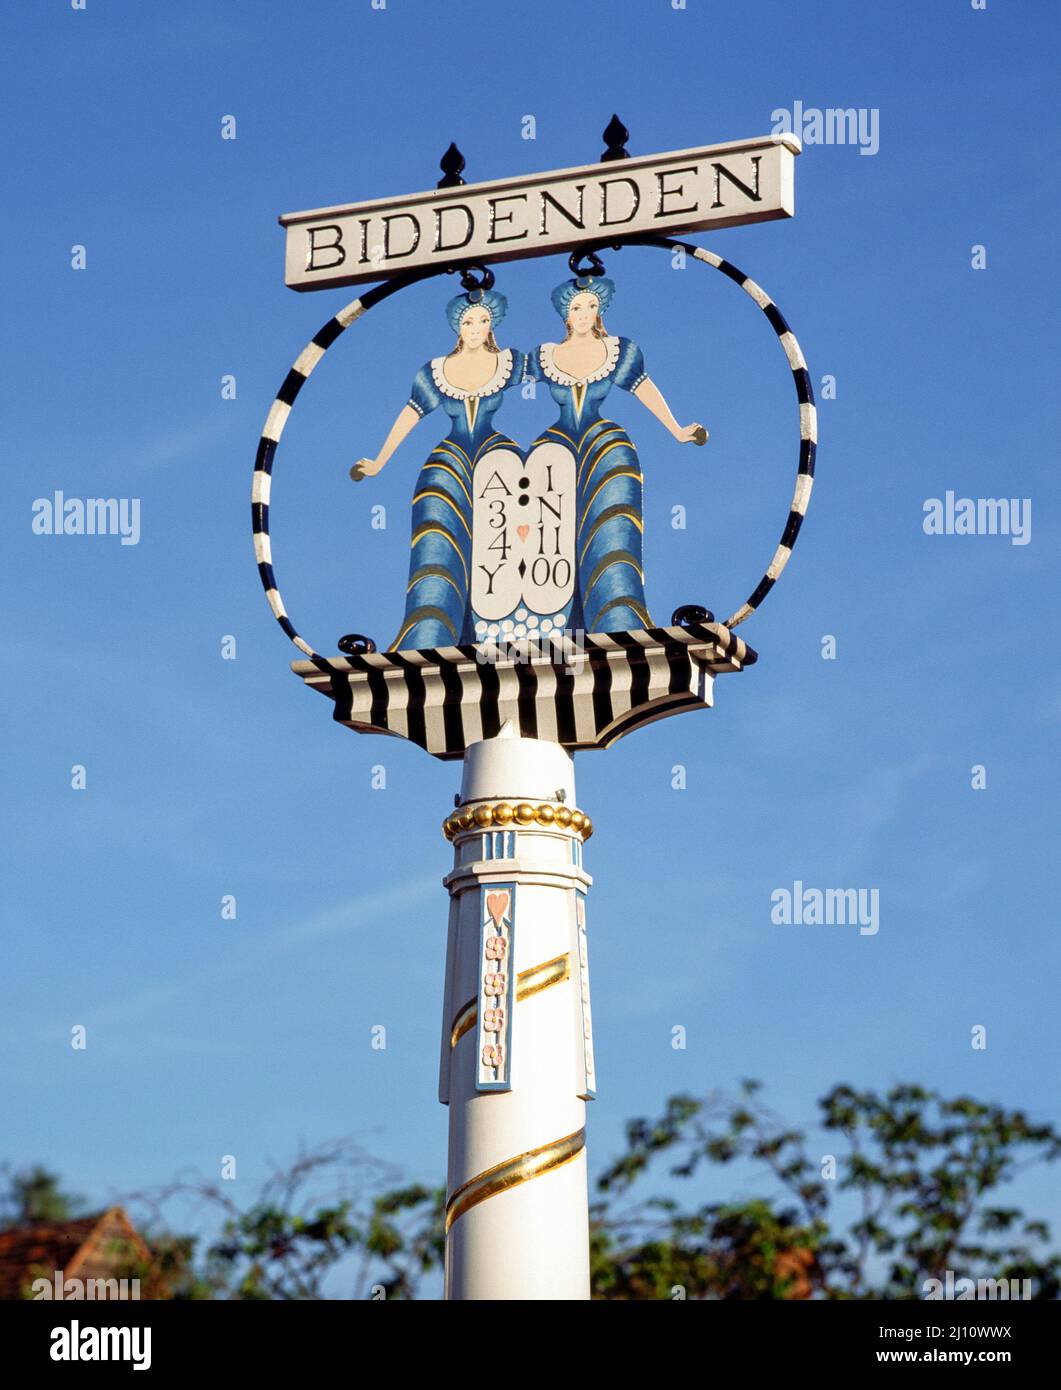 Biddenden, Denkmal für die Siamesische Zwillinge Mary and Eliza Chulkhurst (or Chalkhurst), the Biddenden Maids Stock Photo